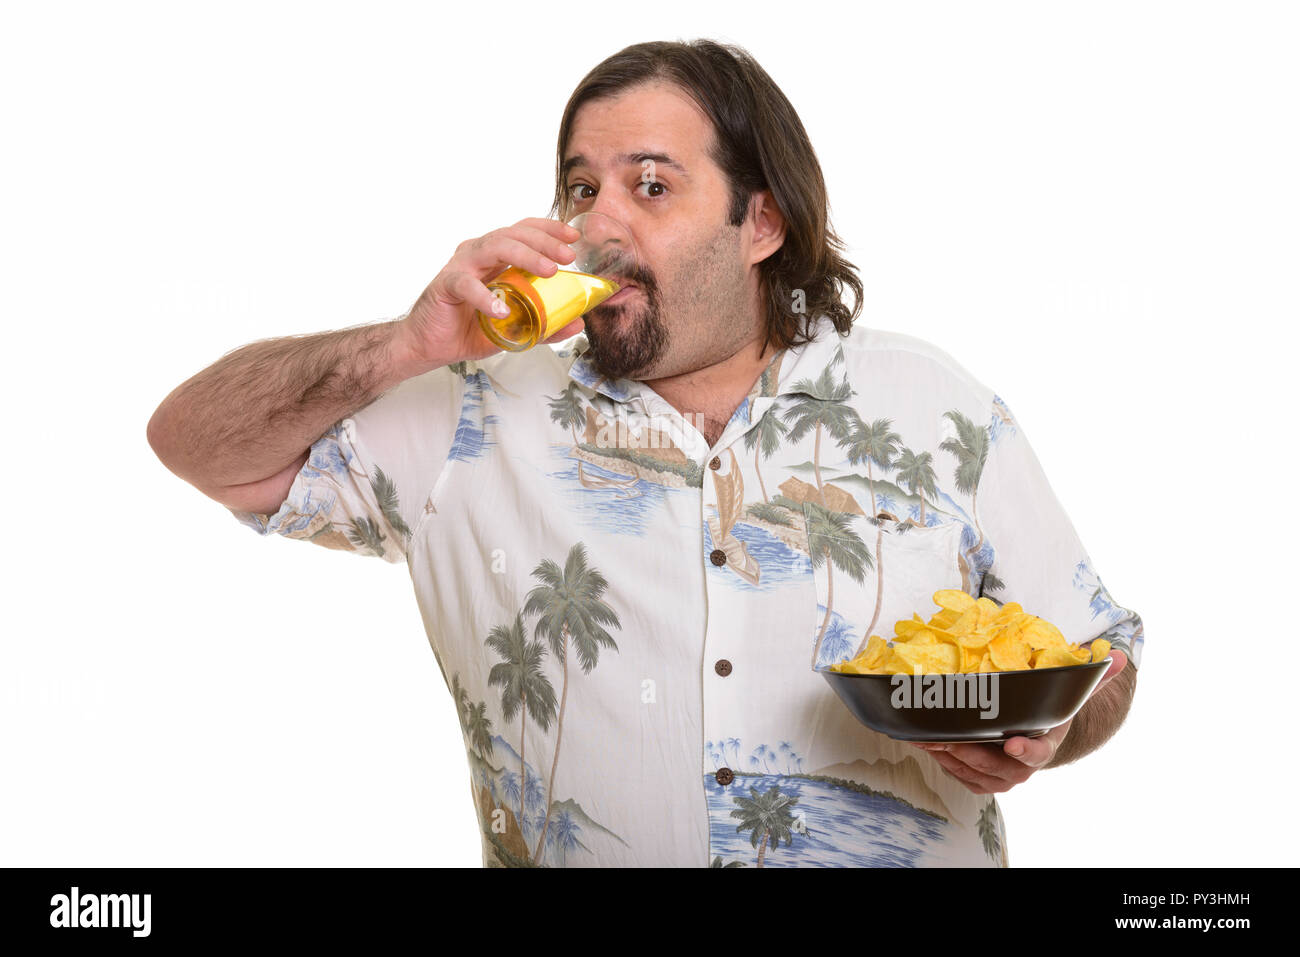 Fat bärtigen kaukasischen Mann Bier trinken und hält Schüssel mit Chip Stockfoto